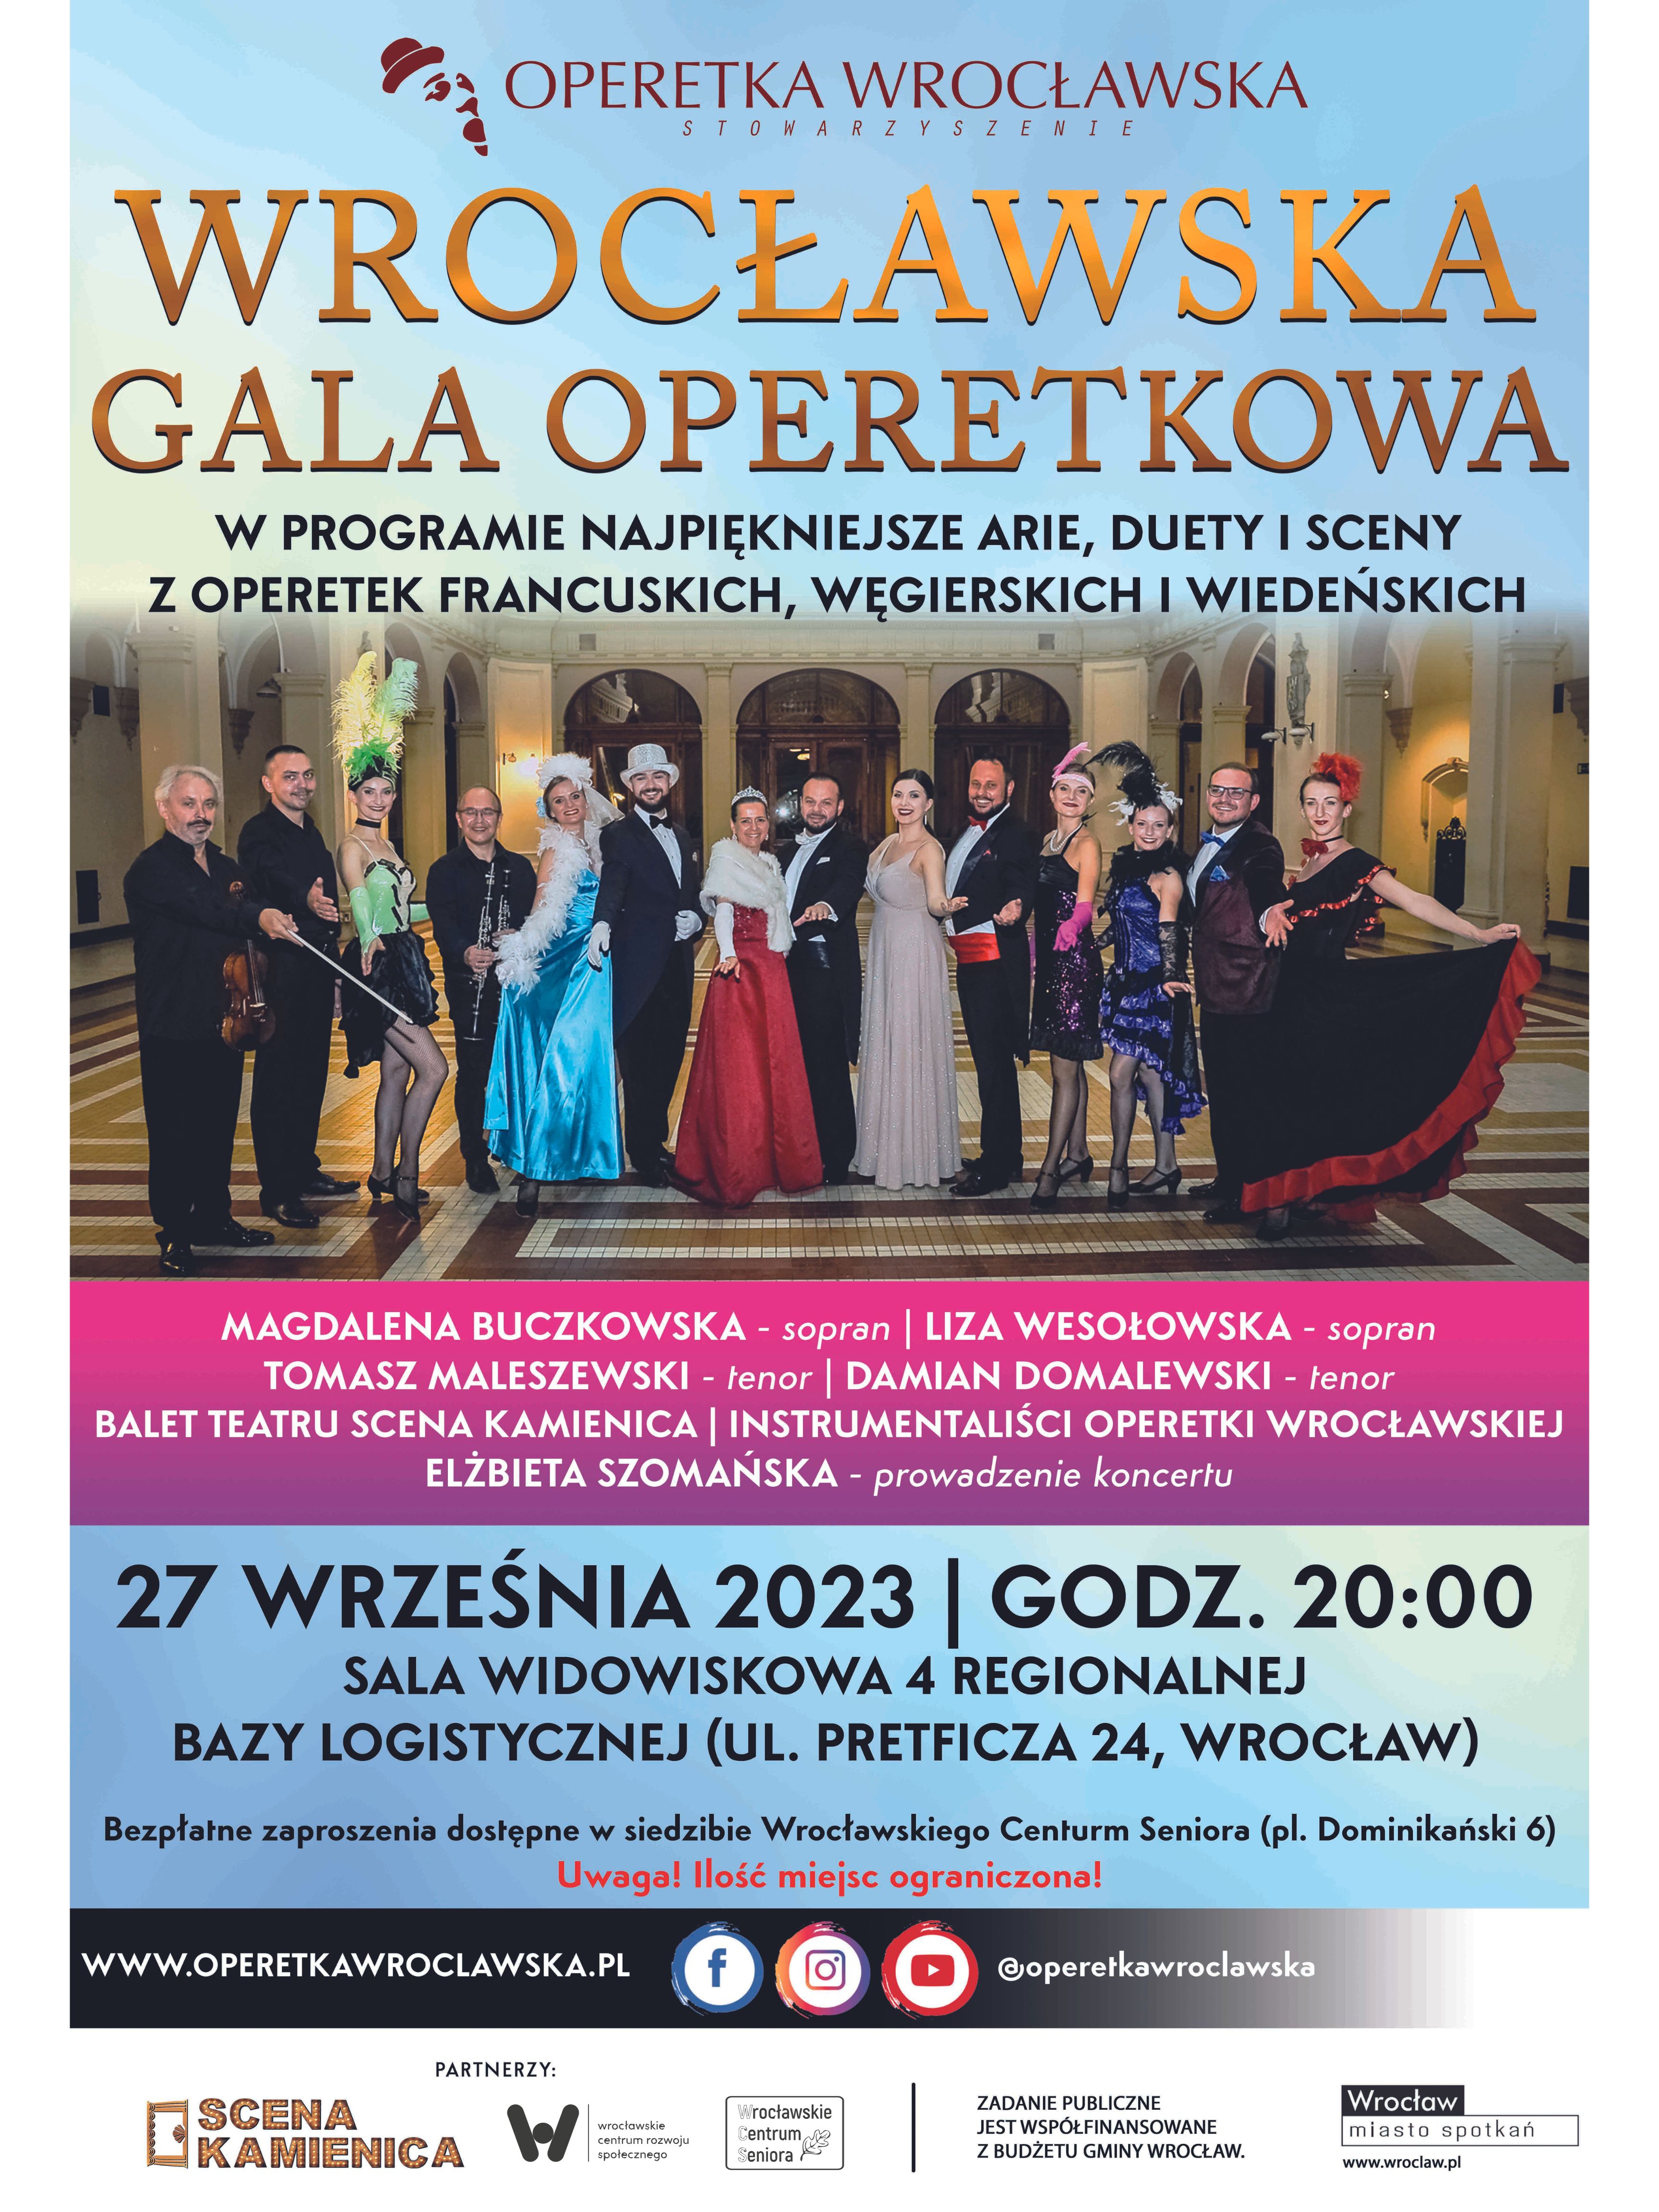 Plakat z nowym terminem IV Wrocławskiej Gali Operetkowej.